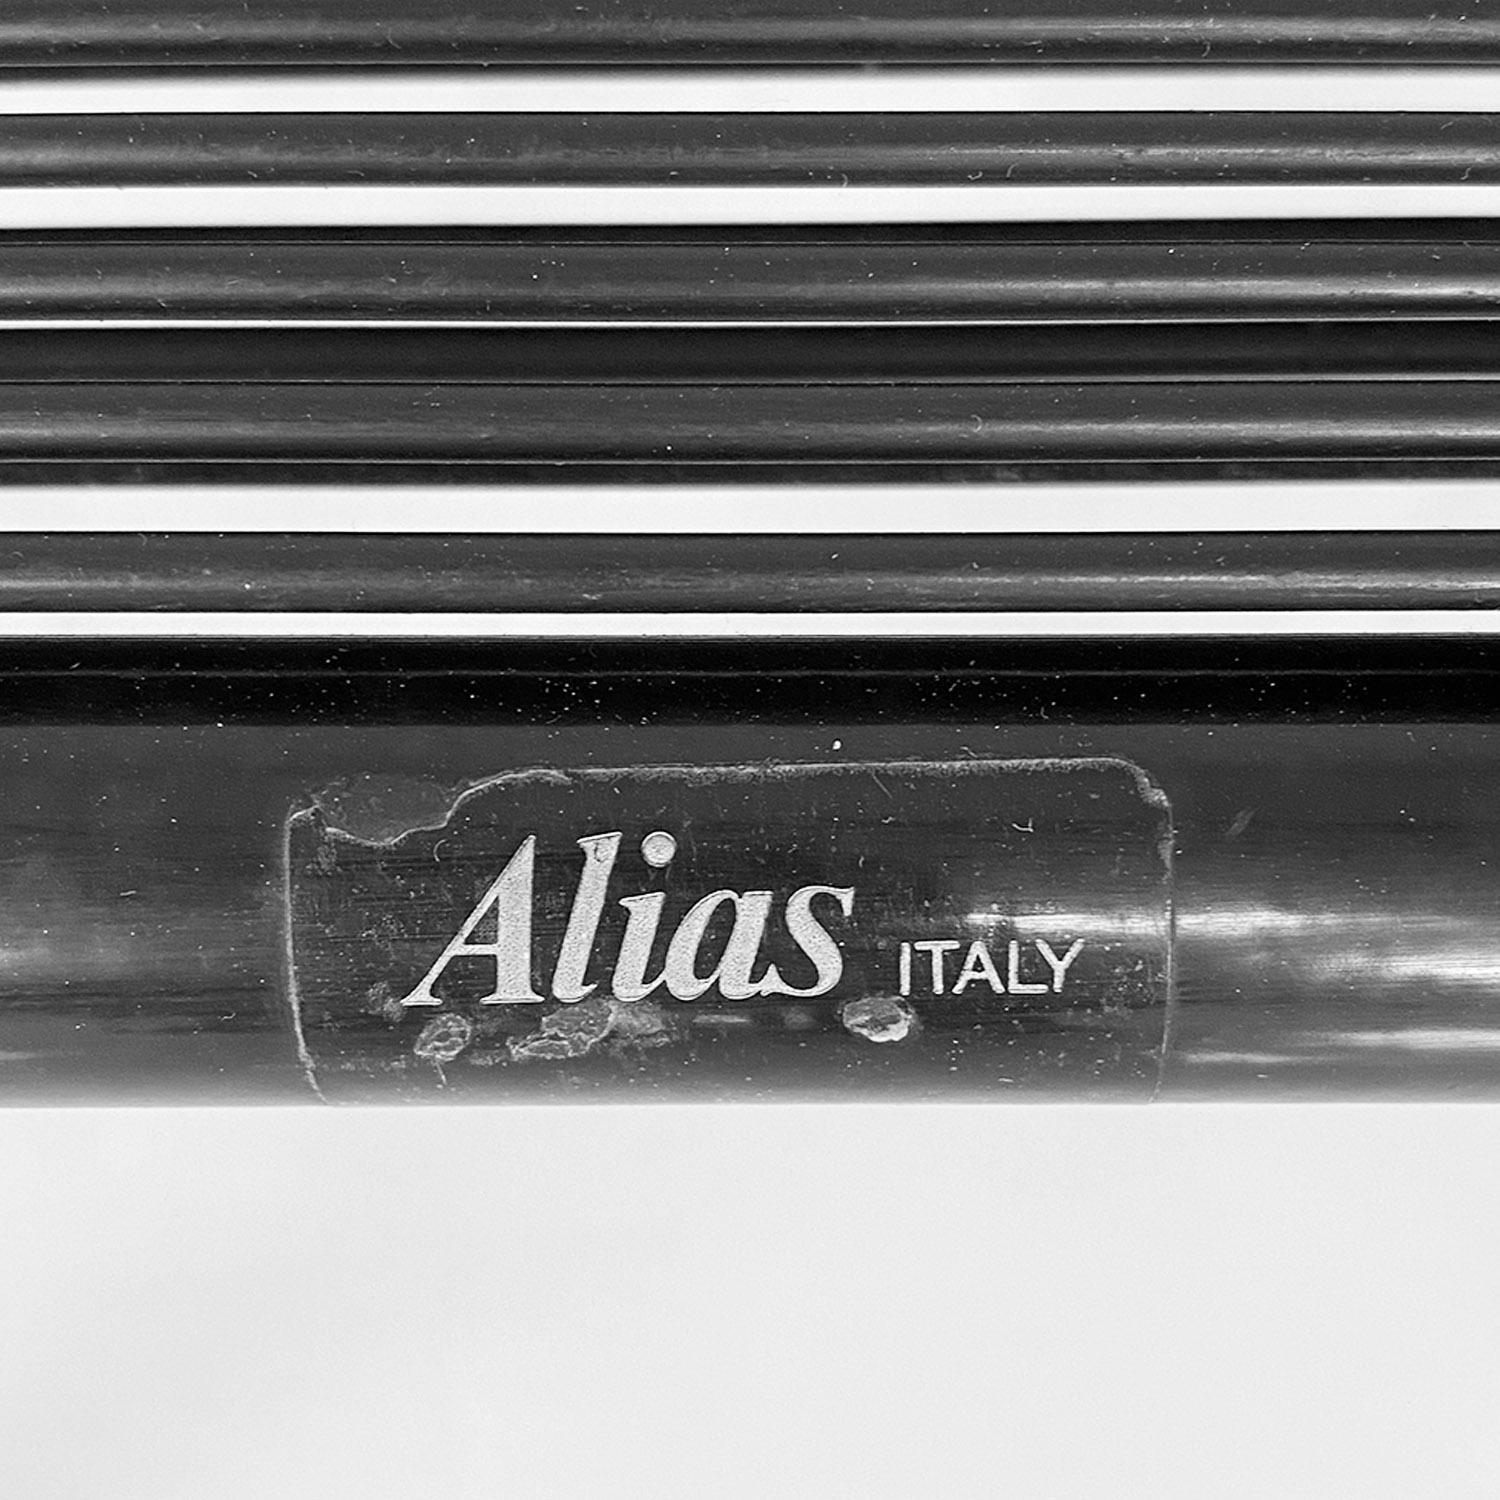 Moderne italienische Spaghetti-Sessel aus schwarzem Kunststoff und Metall von Giandomenico Belotti für Alias, 1980er Jahre
Spaghetti-Sessel, mit Armlehnen und Struktur aus schwarz lackiertem Metall und Sitz und Rückenlehne aus schwarzem